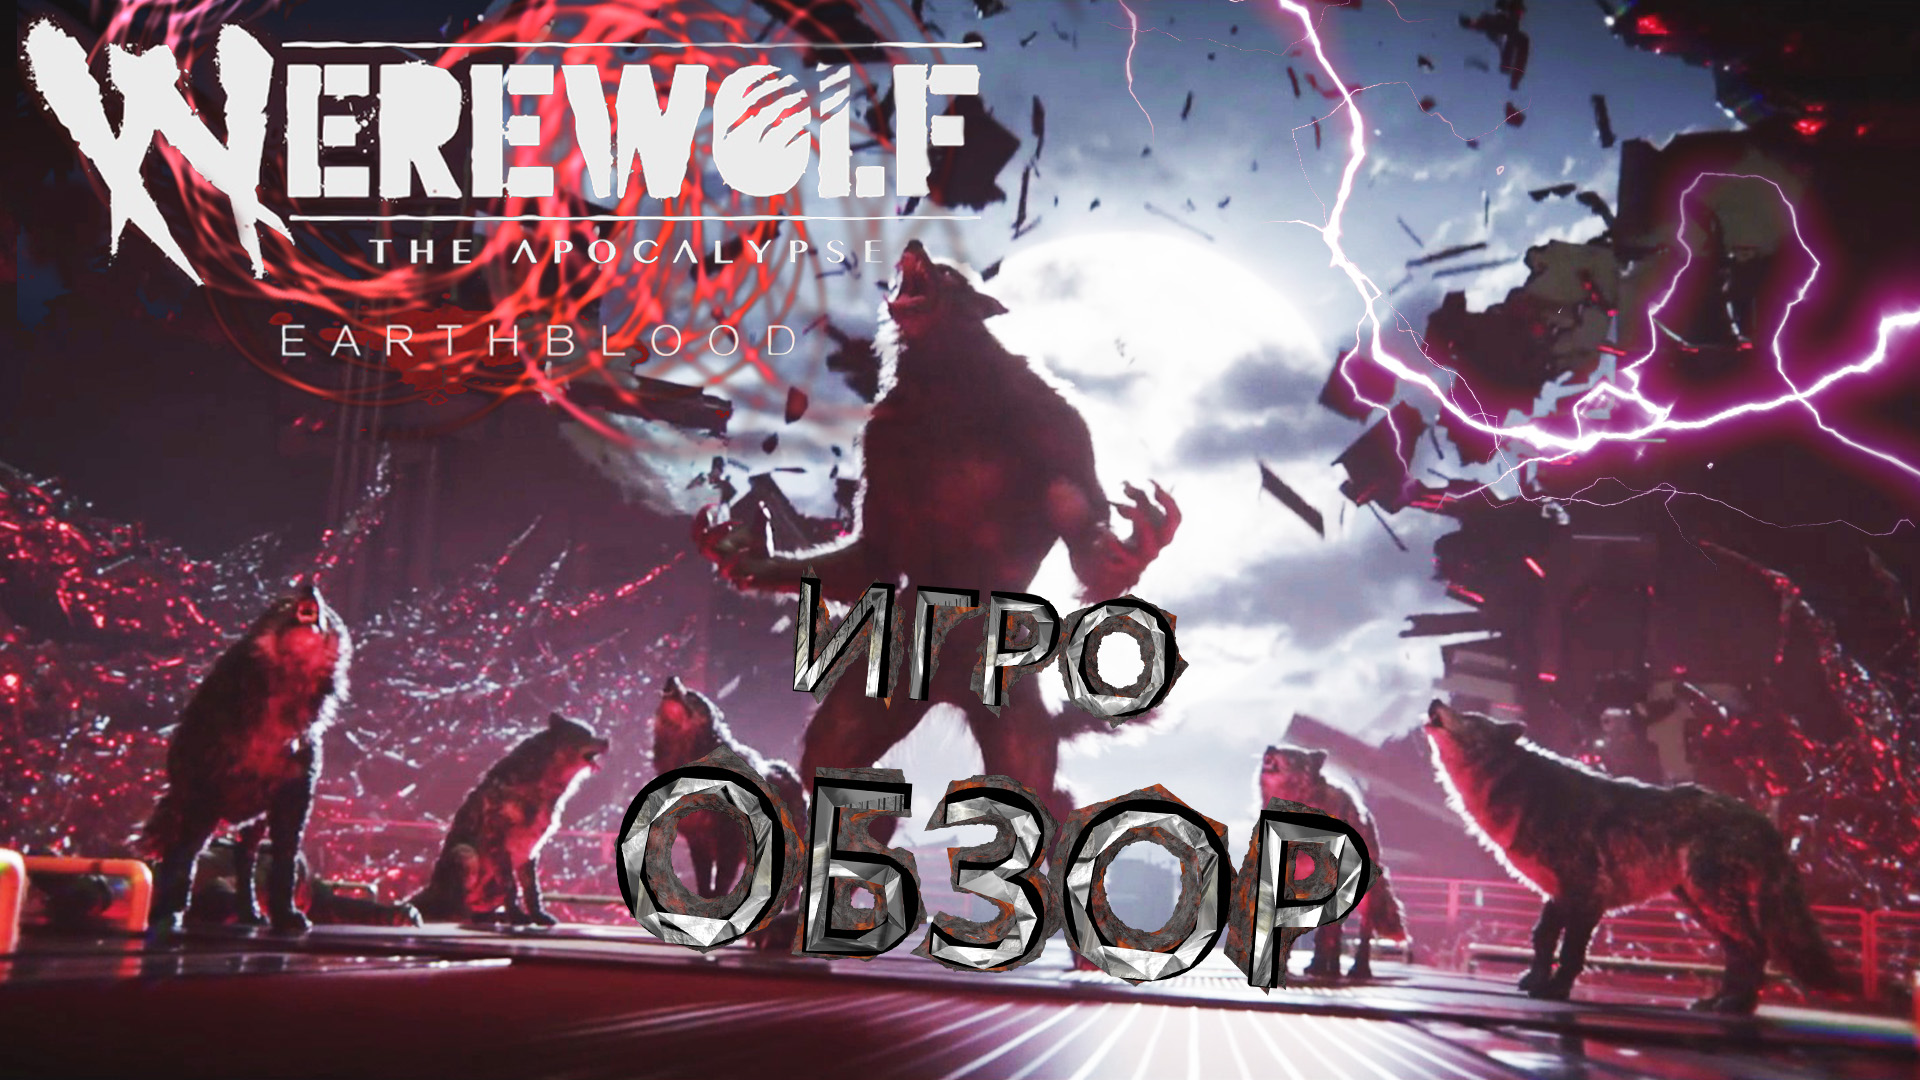 Werewolf: The Apocalypse Earthblood - ОБЗОР ИГРЫ (ОБОРОТНИ СО СВОЕЙ ИСТОРИЕЙ)